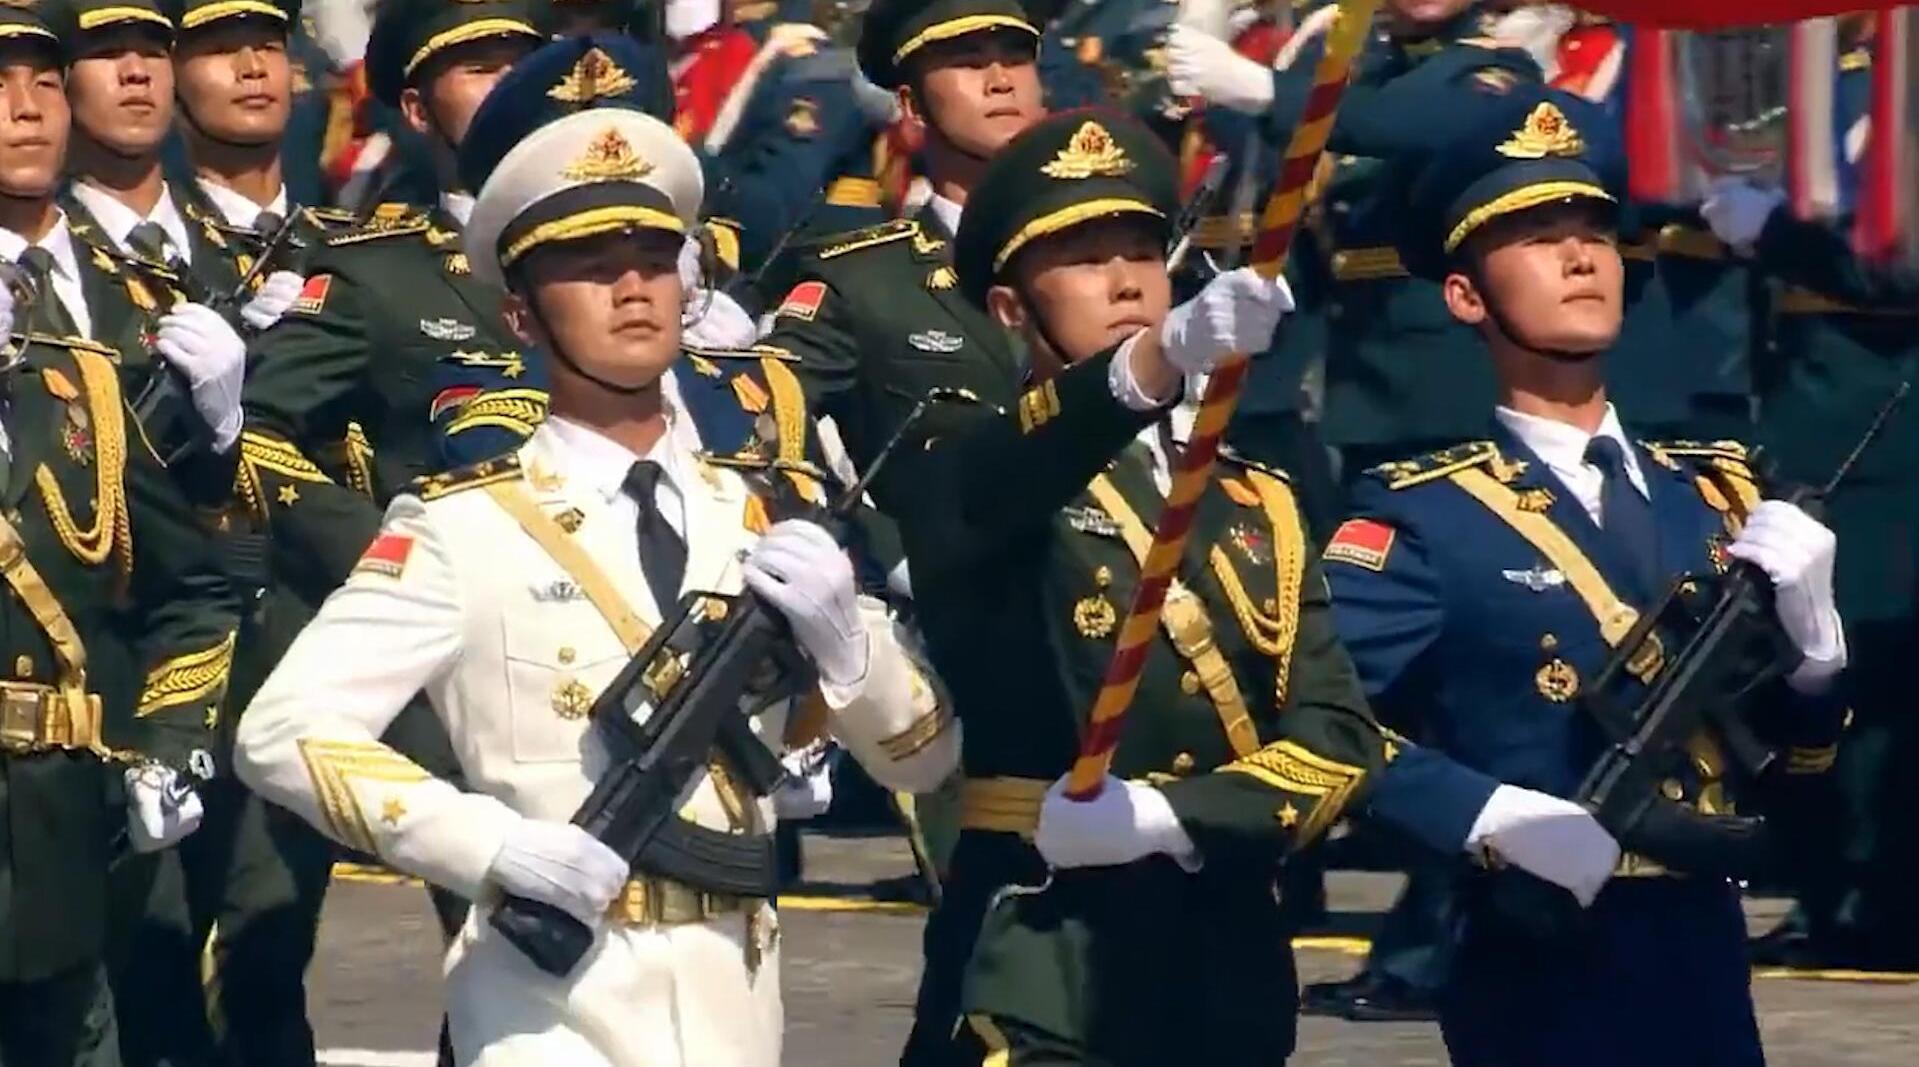 俄罗斯举行冷战后最大阅兵式 上万军人参阅(组图) - 新闻 - 加拿大华人网 - 加拿大华人门户网站